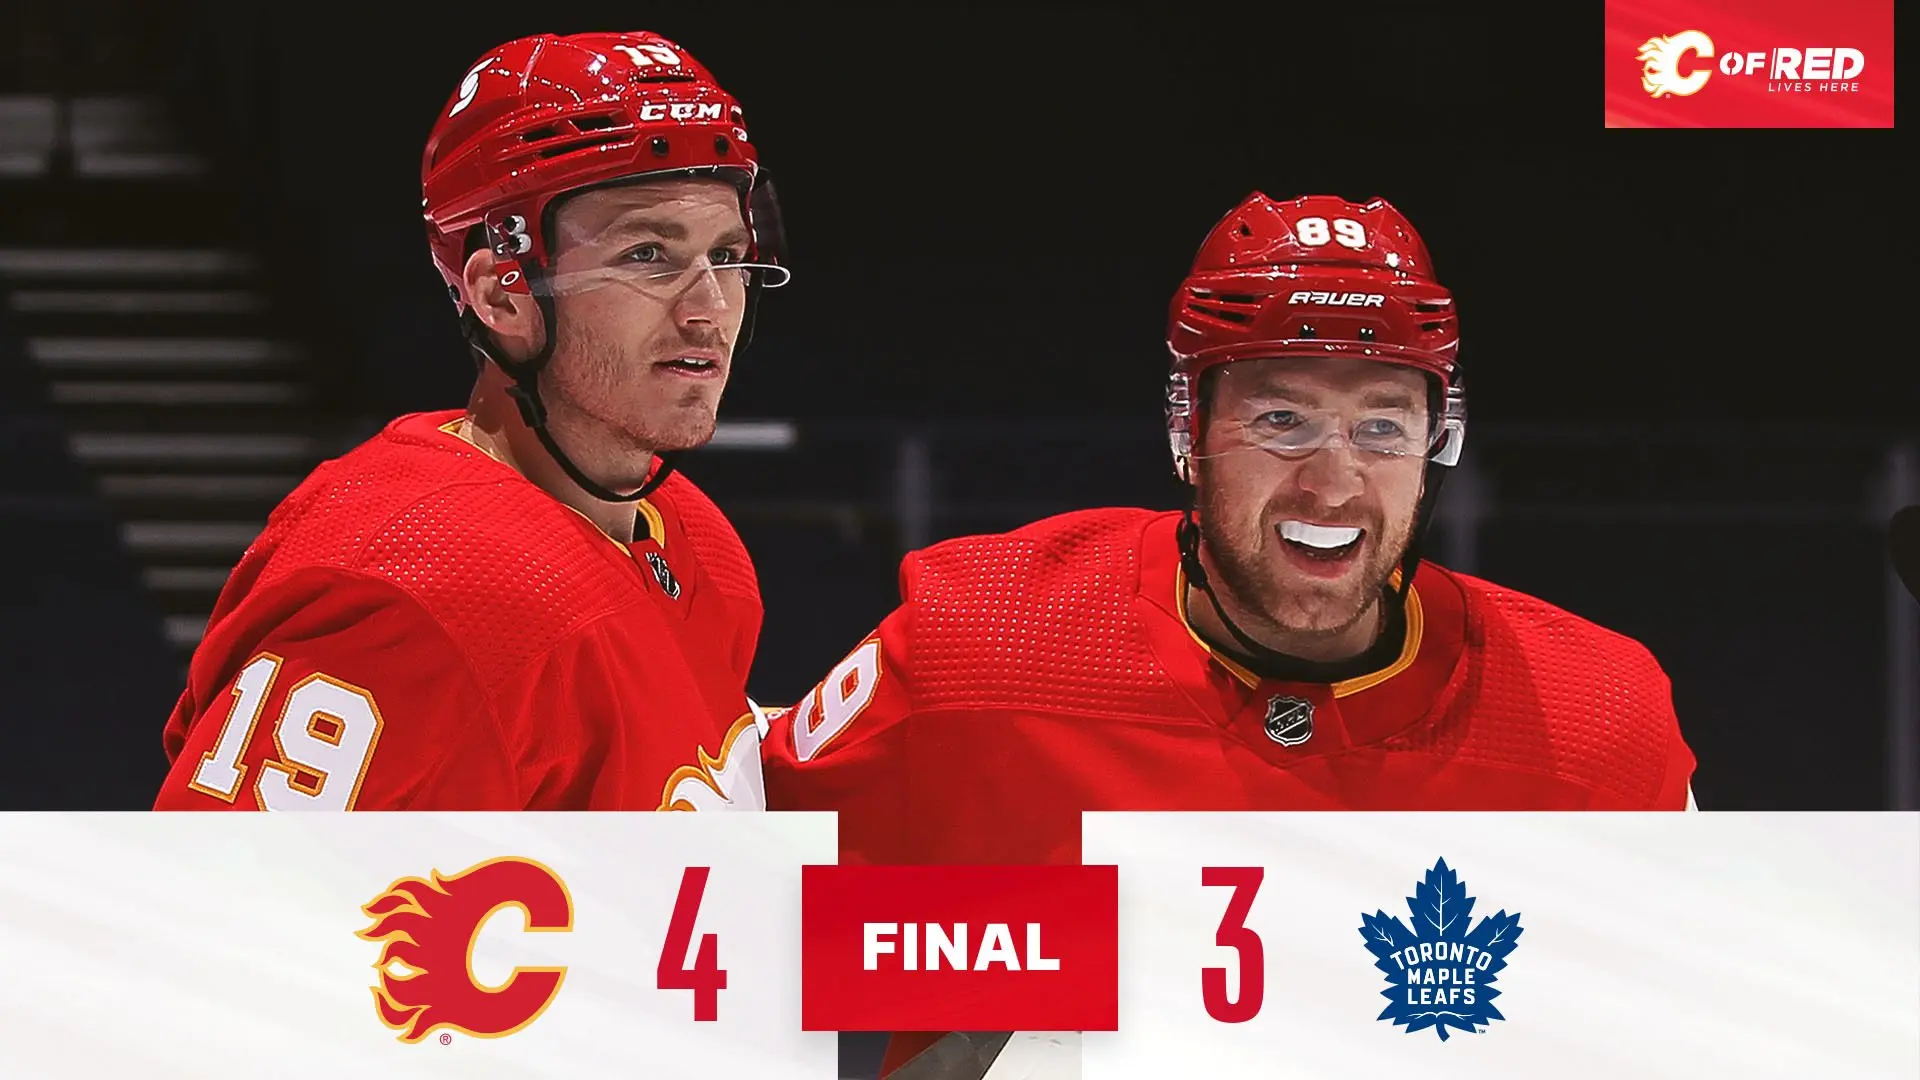 Flames vencem e provocam terceira derrota seguida dos Maple Leafs